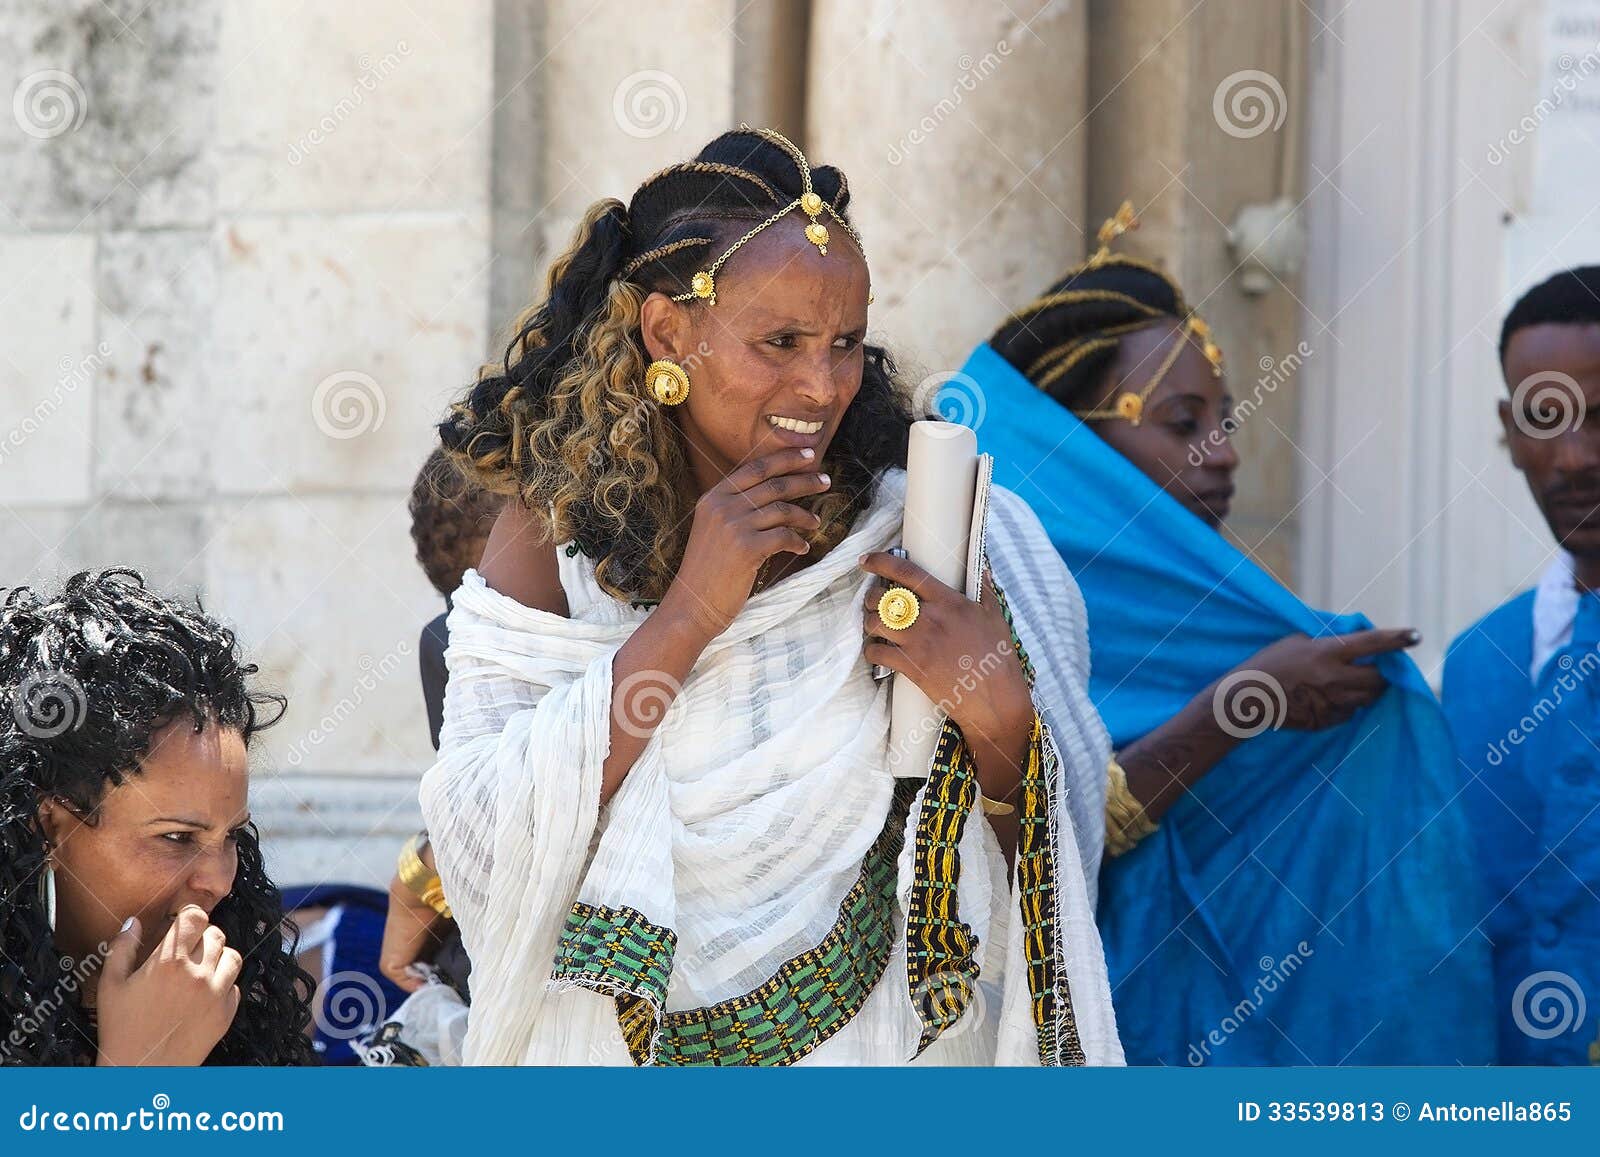 femme-%C3%A9thiopienne-33539813.jpg